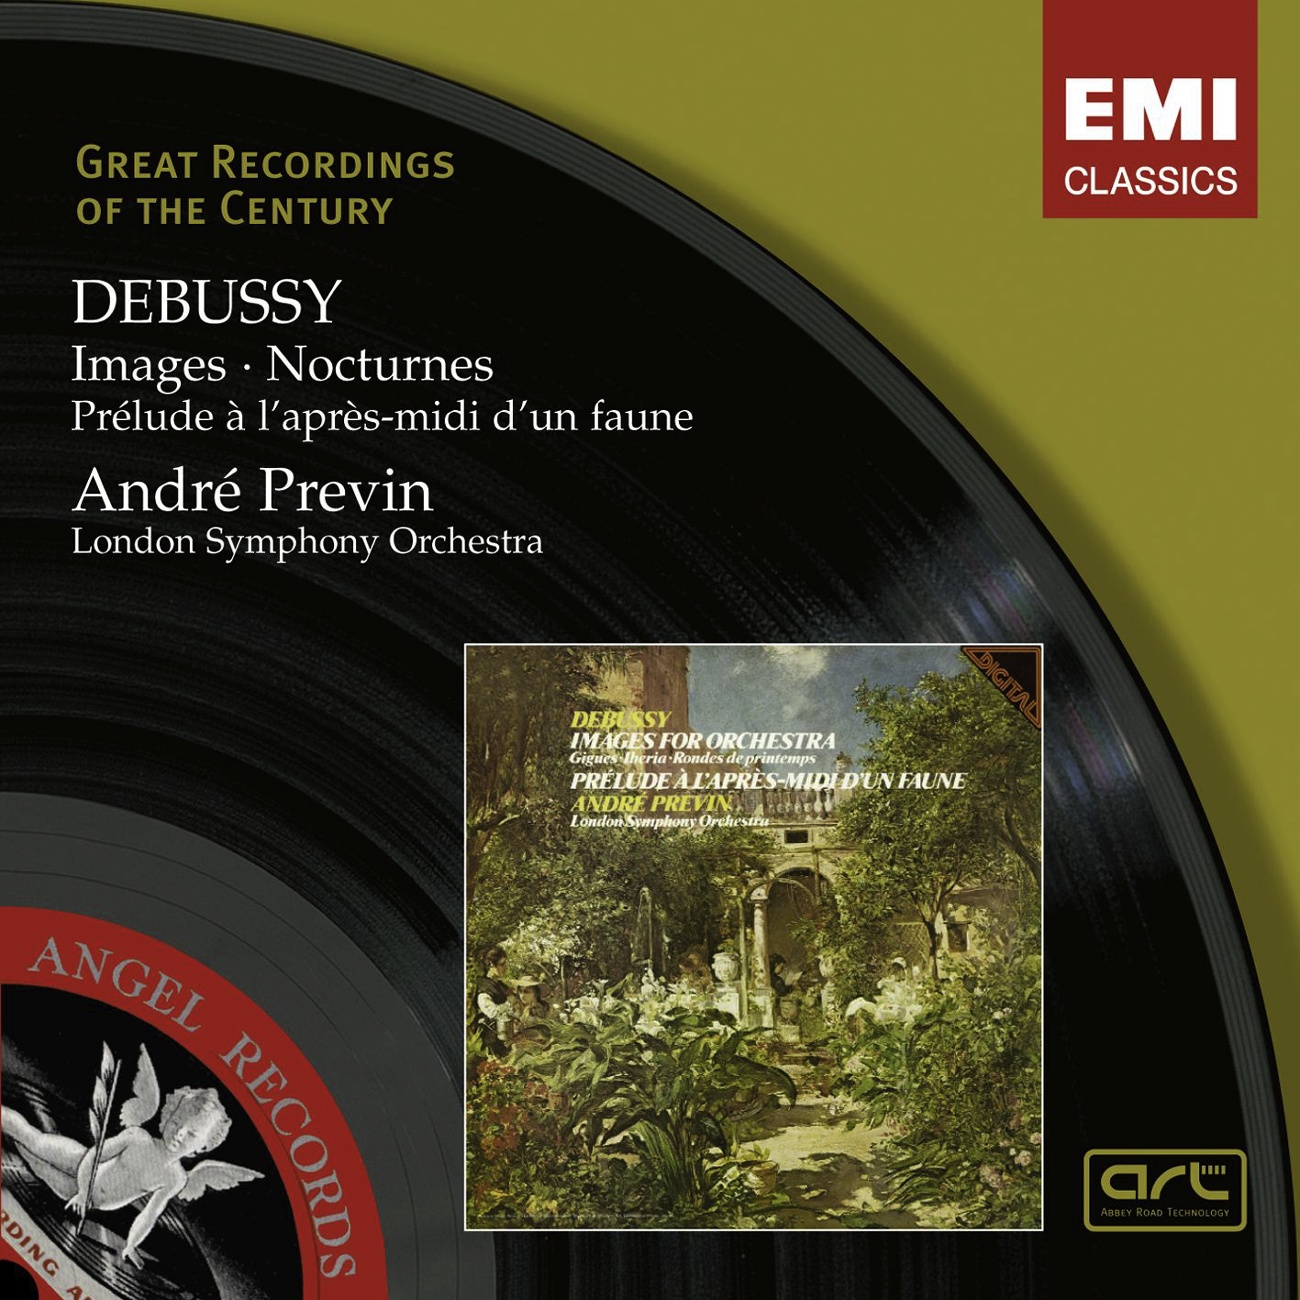 Debussy: Images Pre lude a l' apresmidi d' un faune